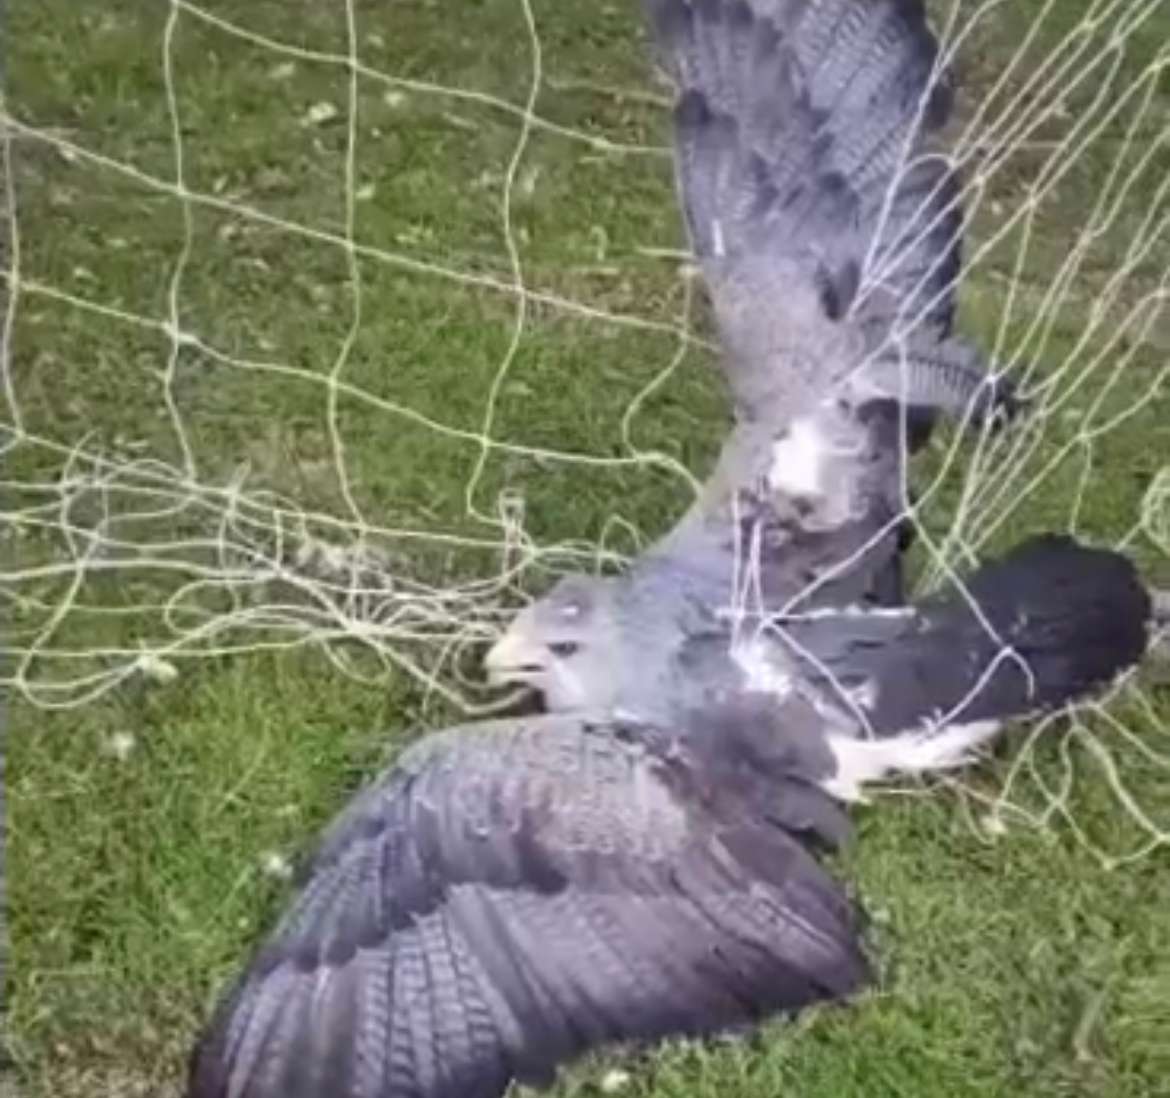 El animal había quedado atrapado en las redes de un arco de fútbol.